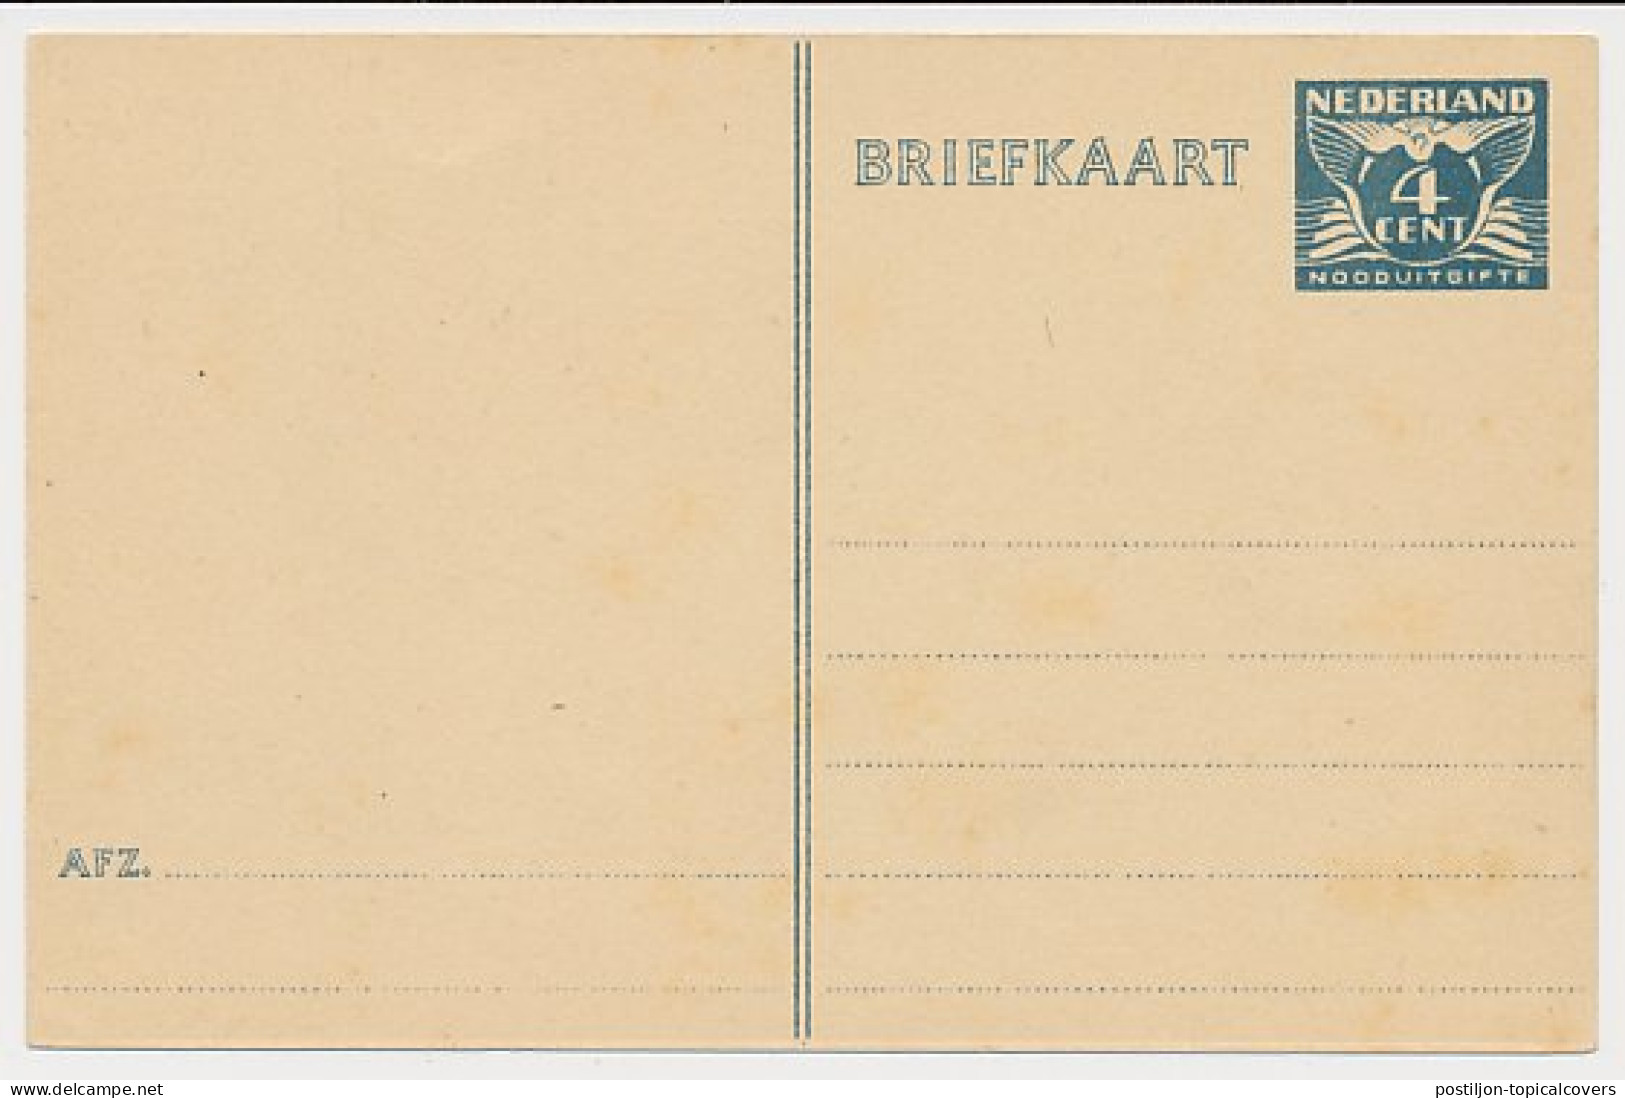 Briefkaart G. 276 - Entiers Postaux